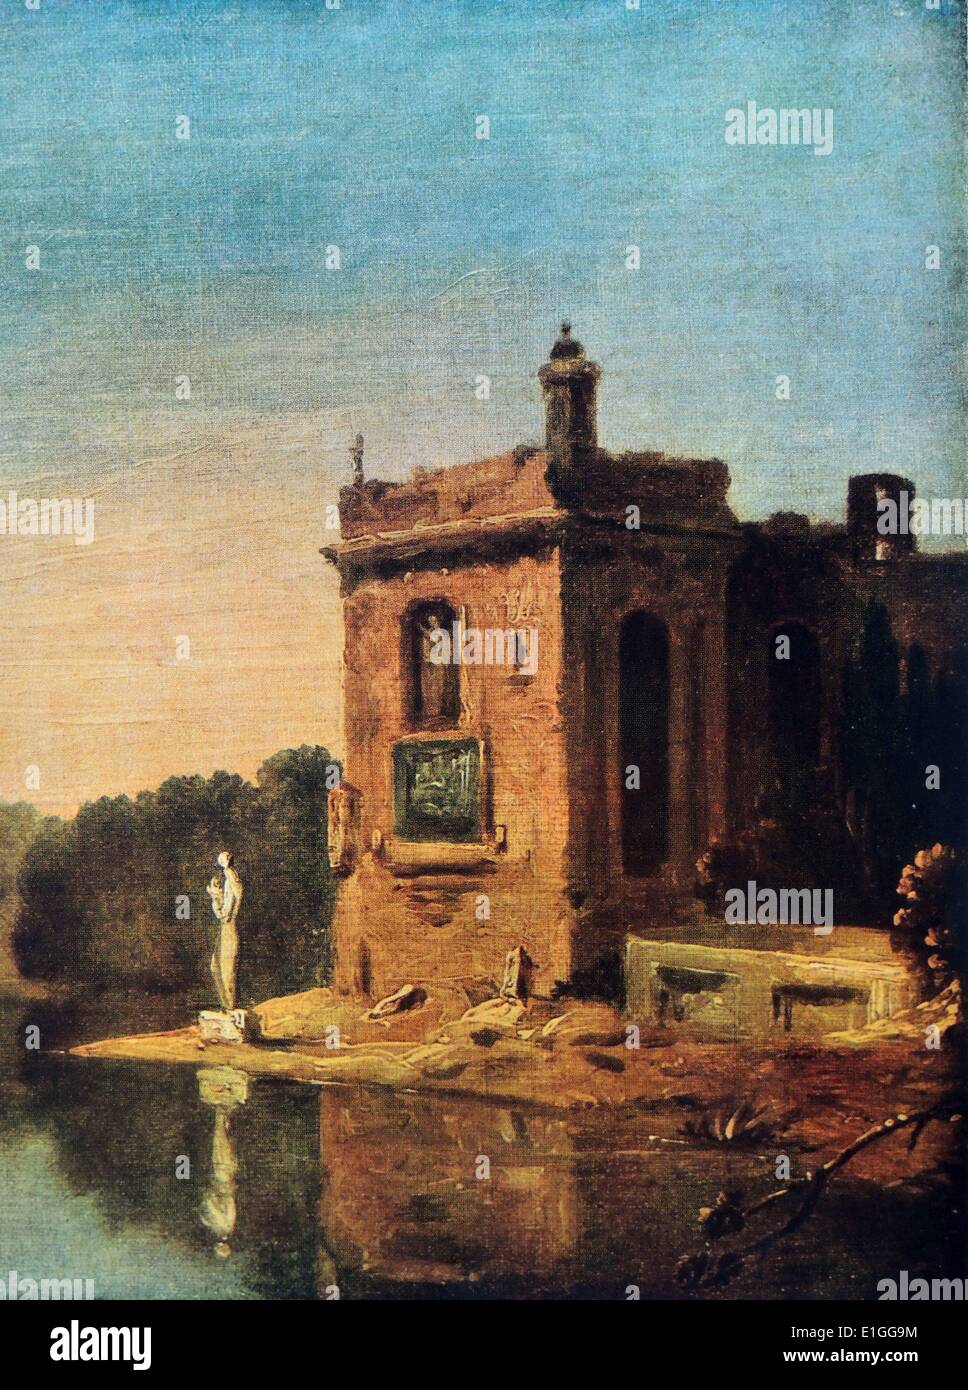 Un lac avec un pavillon et statue. La peinture à l'huile représente un pavillon et statue à côté d'un lac, quelque part en Italie. Par Richard Wilson (1714 - 1782) un peintre de paysages. Datée 1750 Banque D'Images